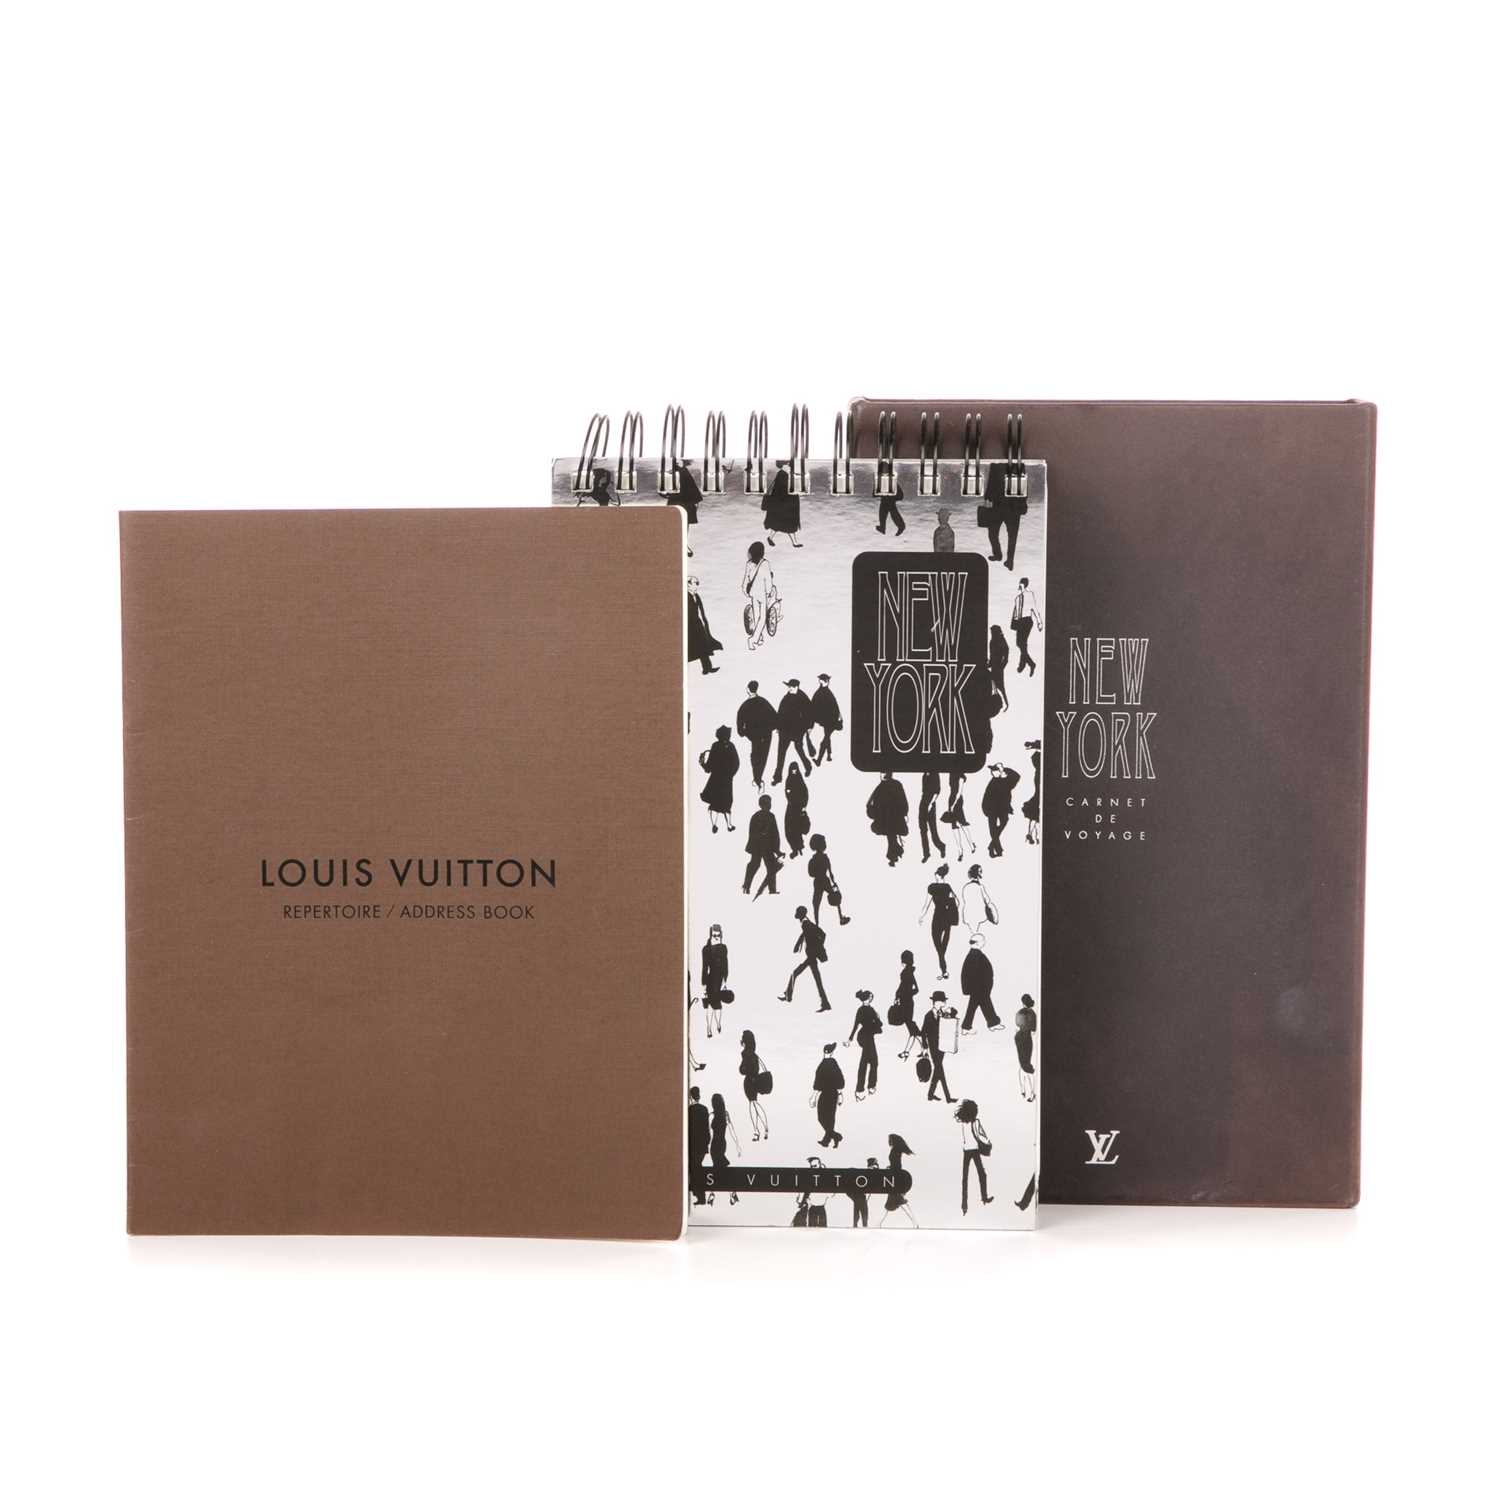 Sold at Auction: Louis Vuitton, Louis Vuitton Book 'Louis Vuitton